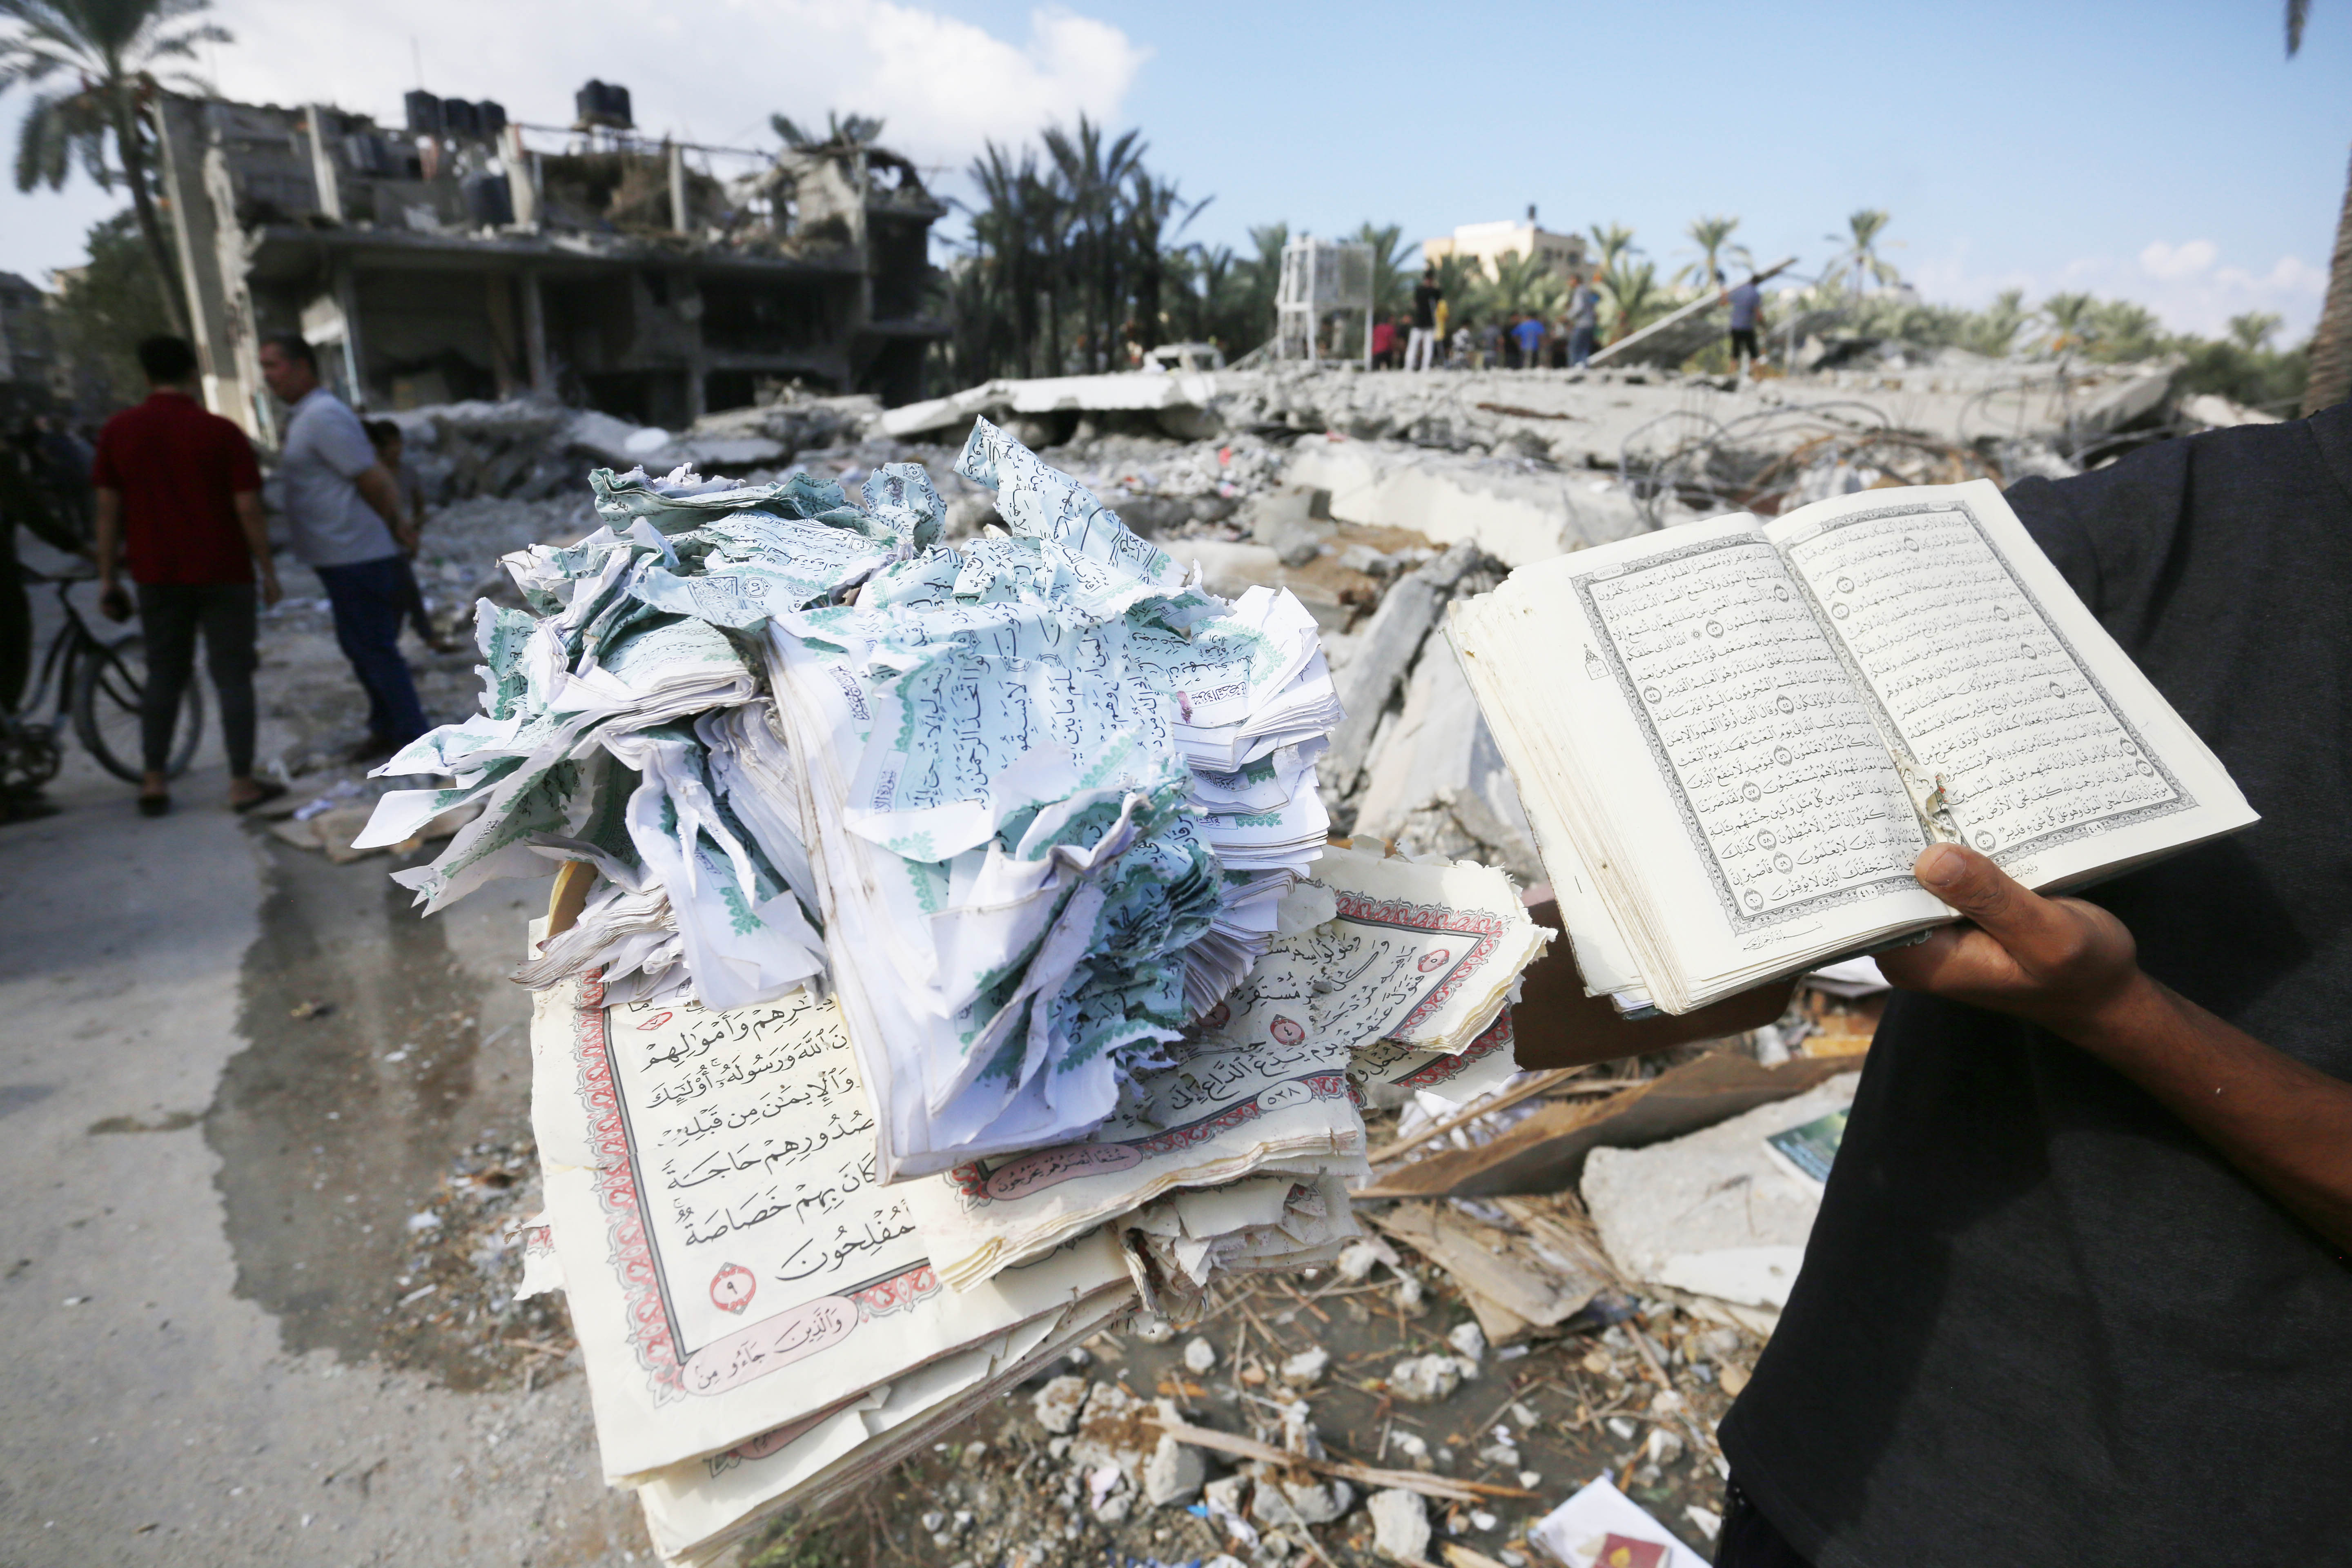 القرآن الكريم يتعرض للتلف في غزة جراء استهداف إسرائيل احد المساجد